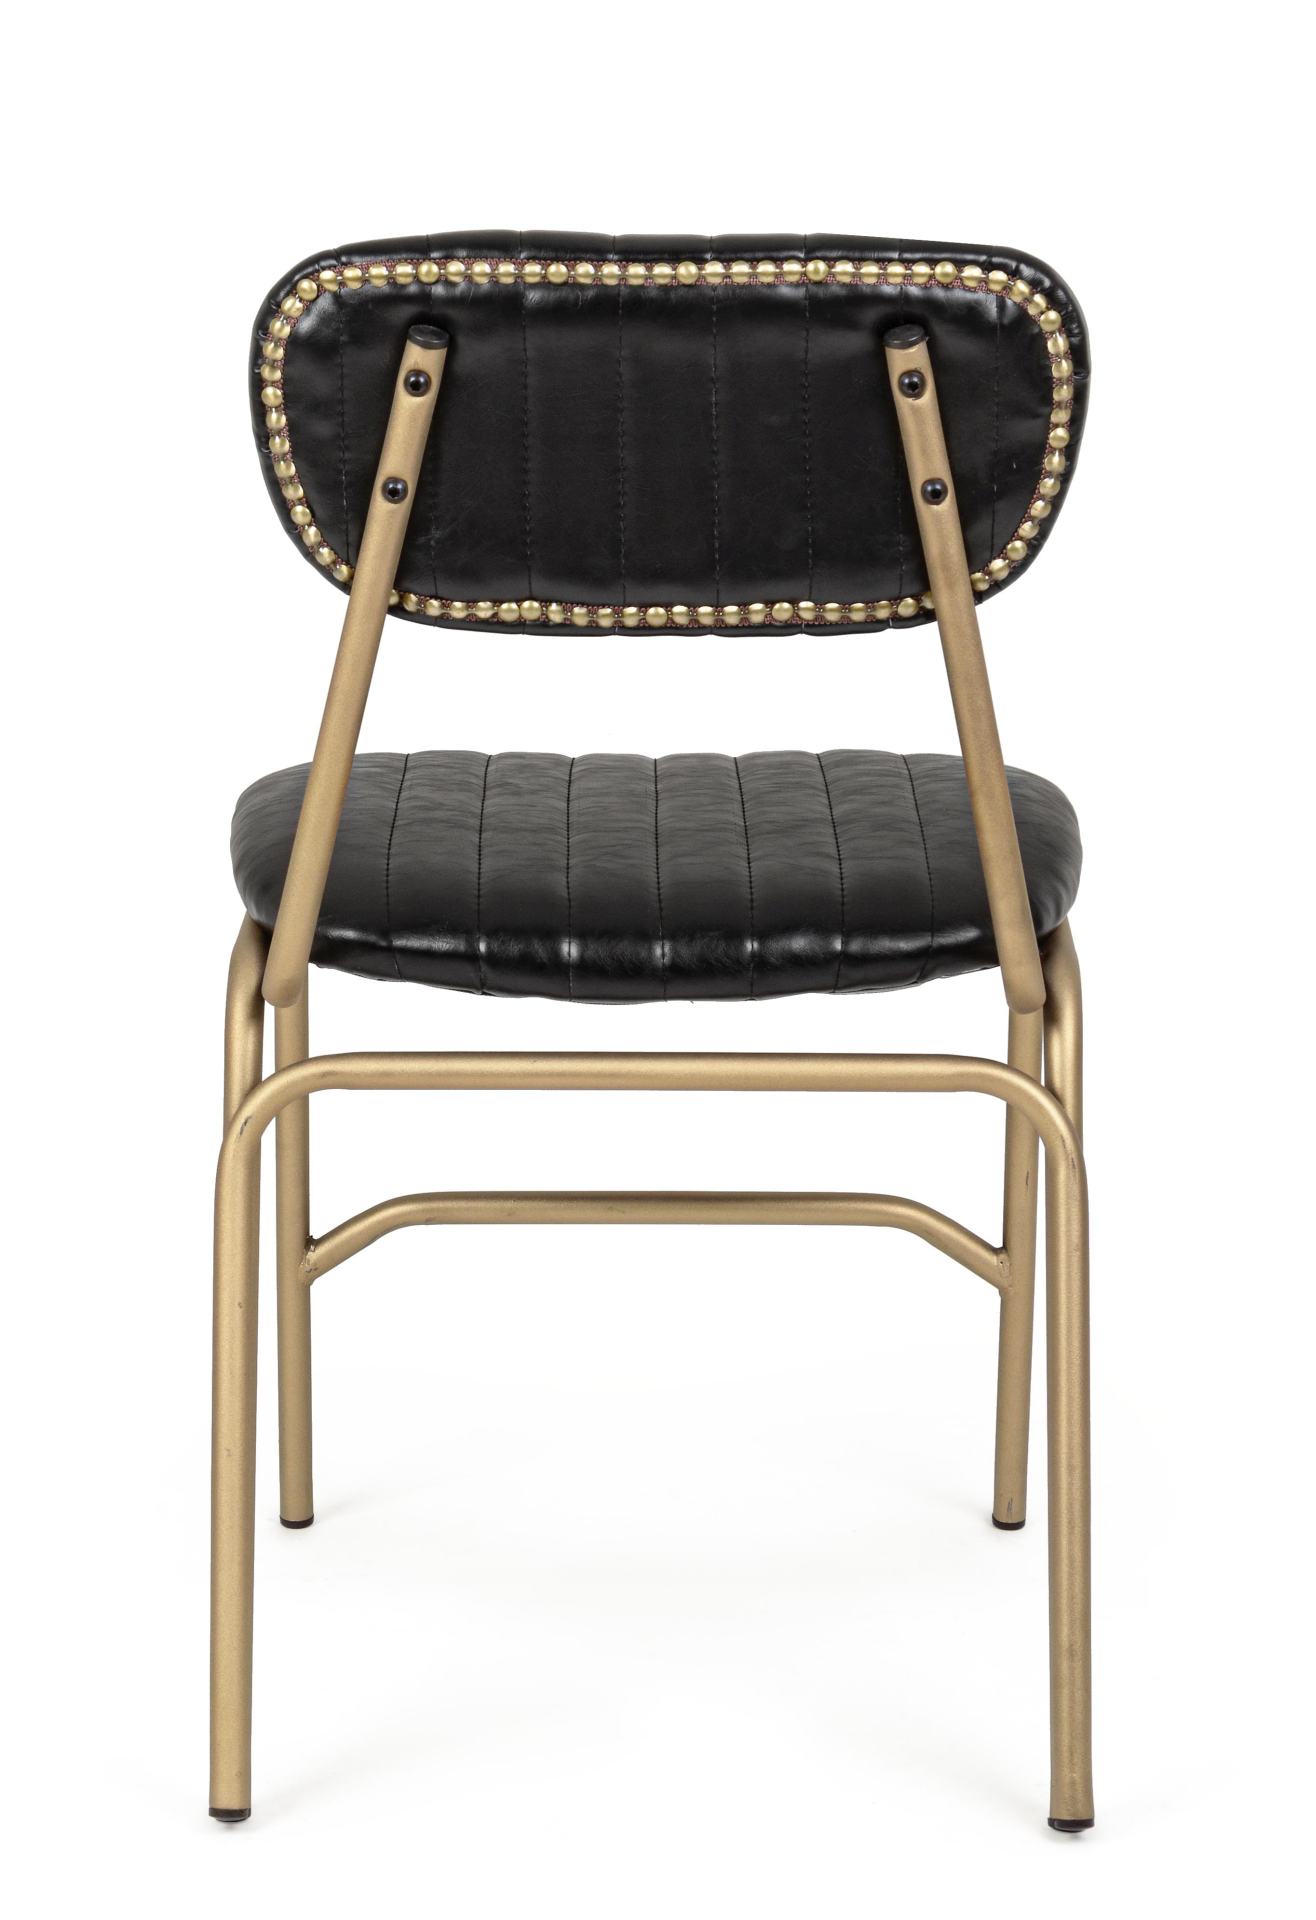 Der Stuhl Addy überzeugt mit seinem industriellen Design. Gefertigt wurde der Stuhl aus Kunstleder, welches einen schwarzen Farbton besitzt. Das Gestell ist aus Metall und ist Gold. Die Sitzhöhe beträgt 46 cm.